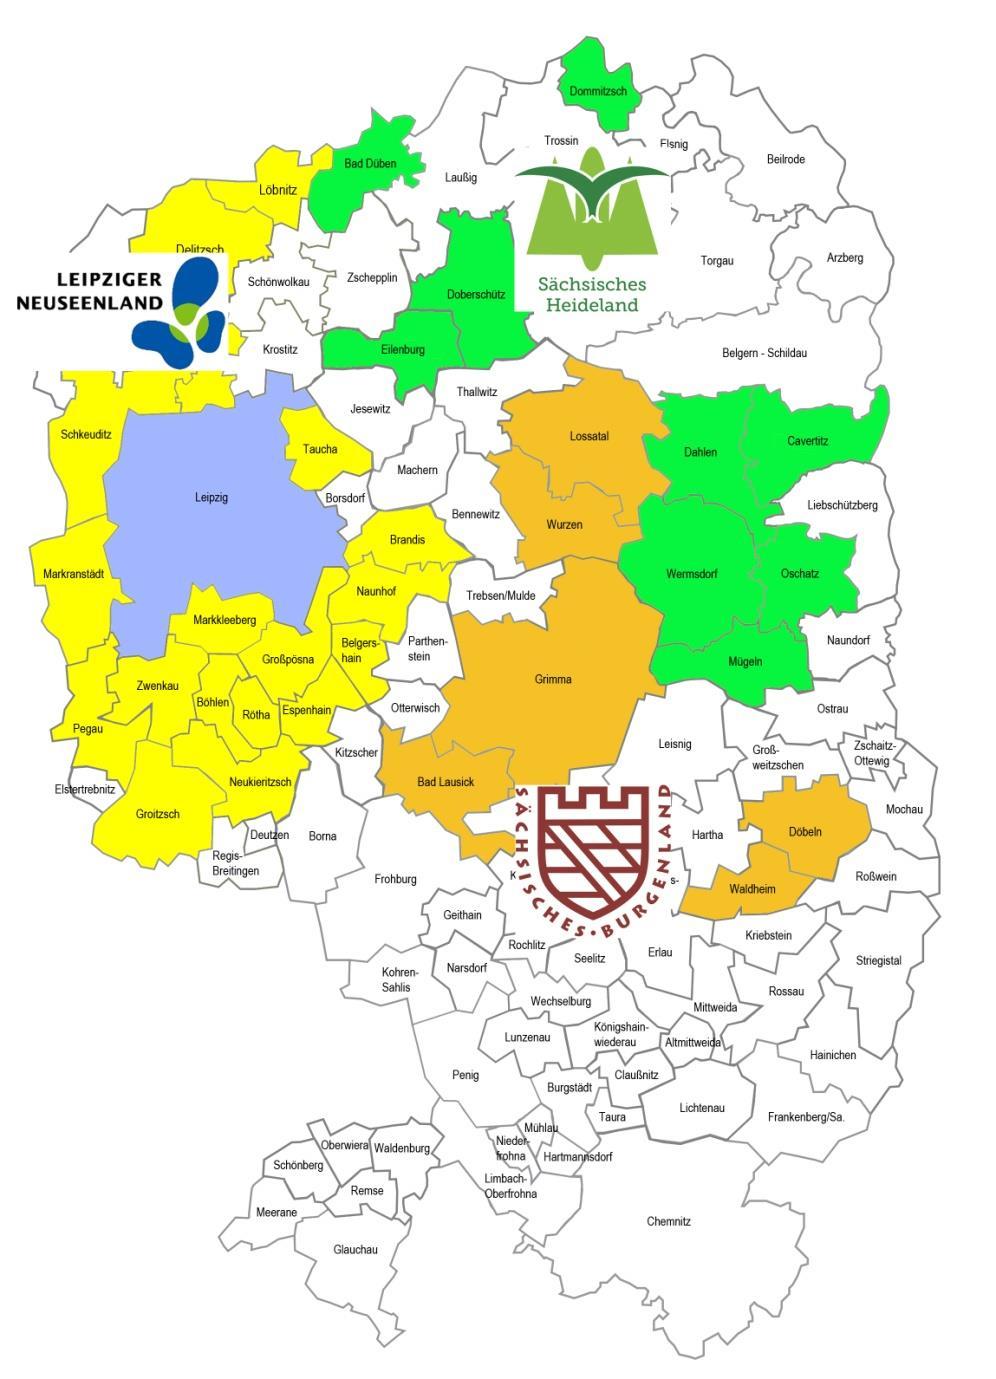 Beteiligung aktuell Orange= Sächsisches Burgenland (6) Grün = Sächsisches Heideland (9) Gelb = Leipziger Neuseenland (18) Aus aktuellen Mitgliedern in Regionalvereinen ergibt sich ein